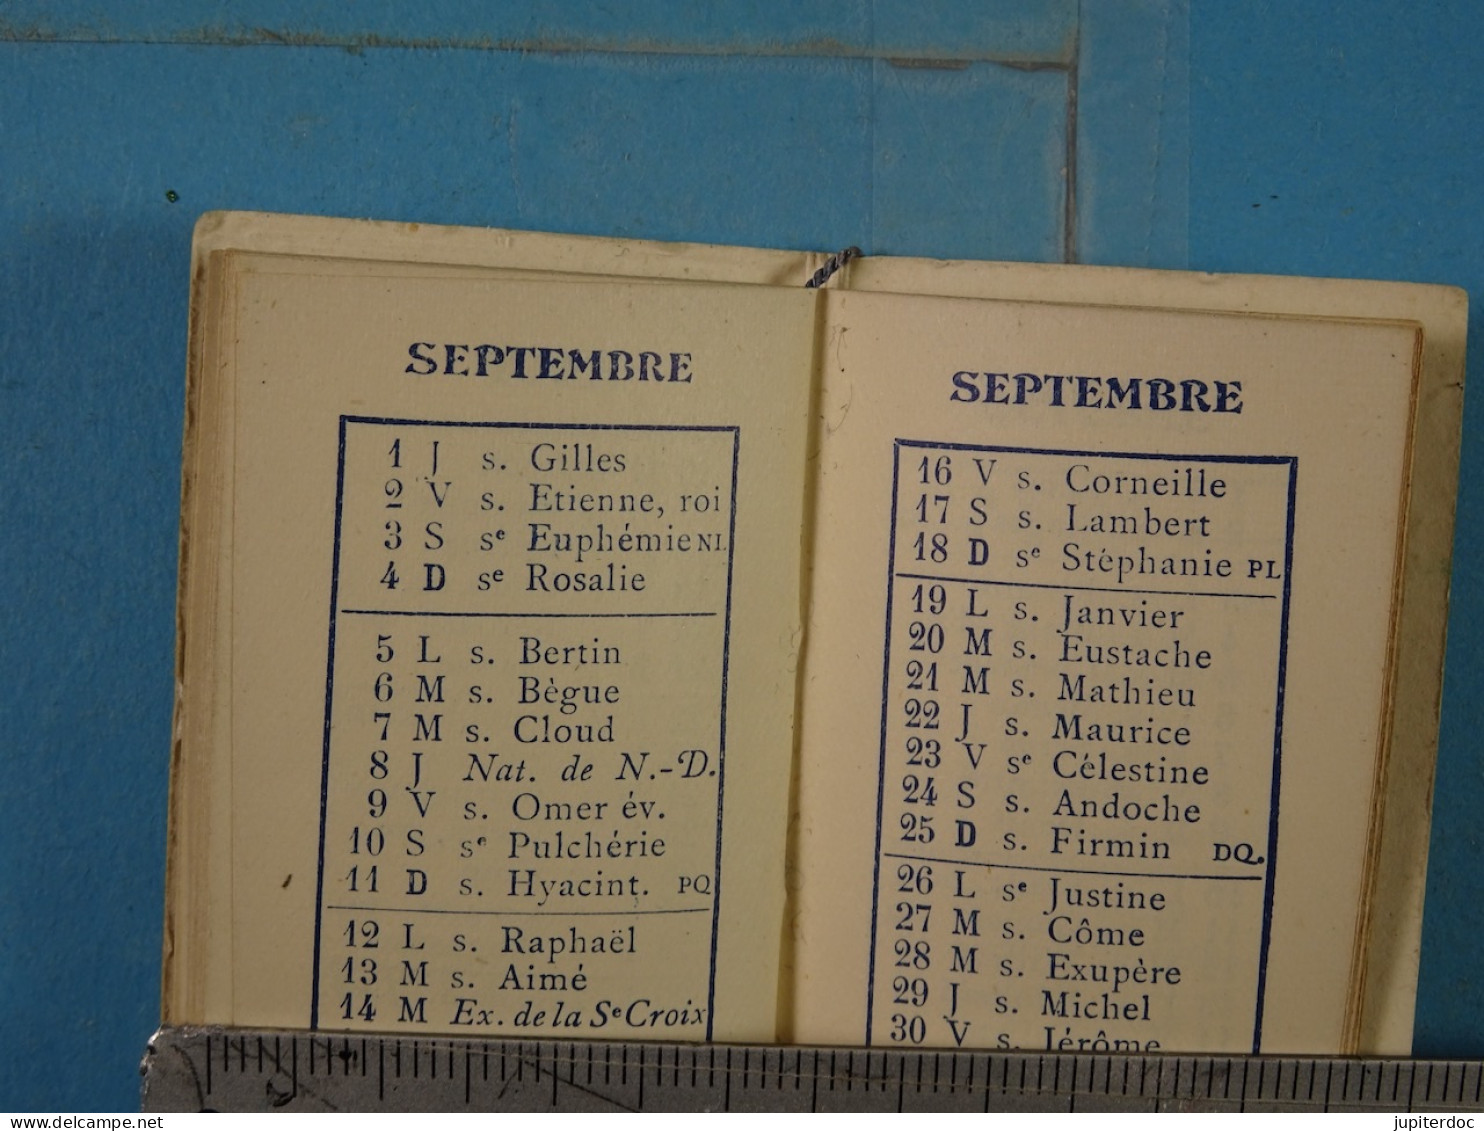 Calendrier De Poche Papeterie Métropole 1910 J. & L. Aymond Bruxelles (3,5 Cm X 5,5 Cm) - Petit Format : 1901-20